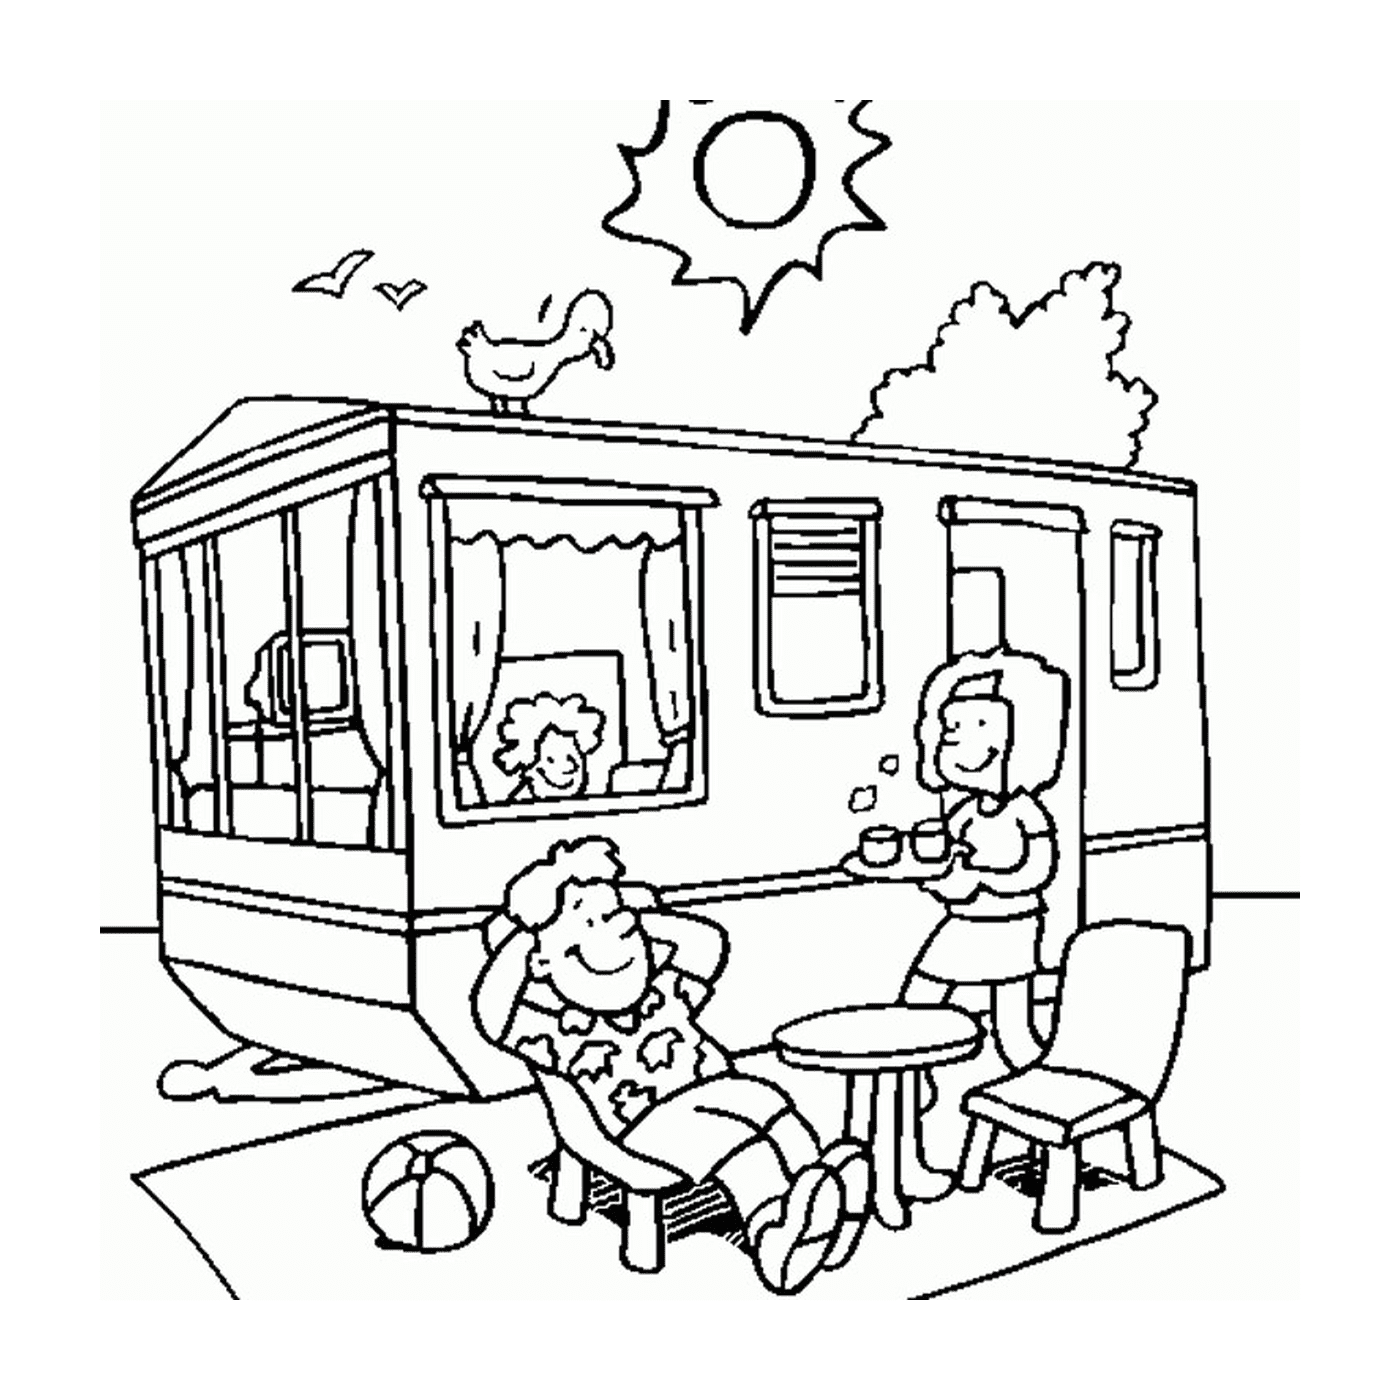  Personas sentadas frente a una autocaravana en vacaciones de verano 